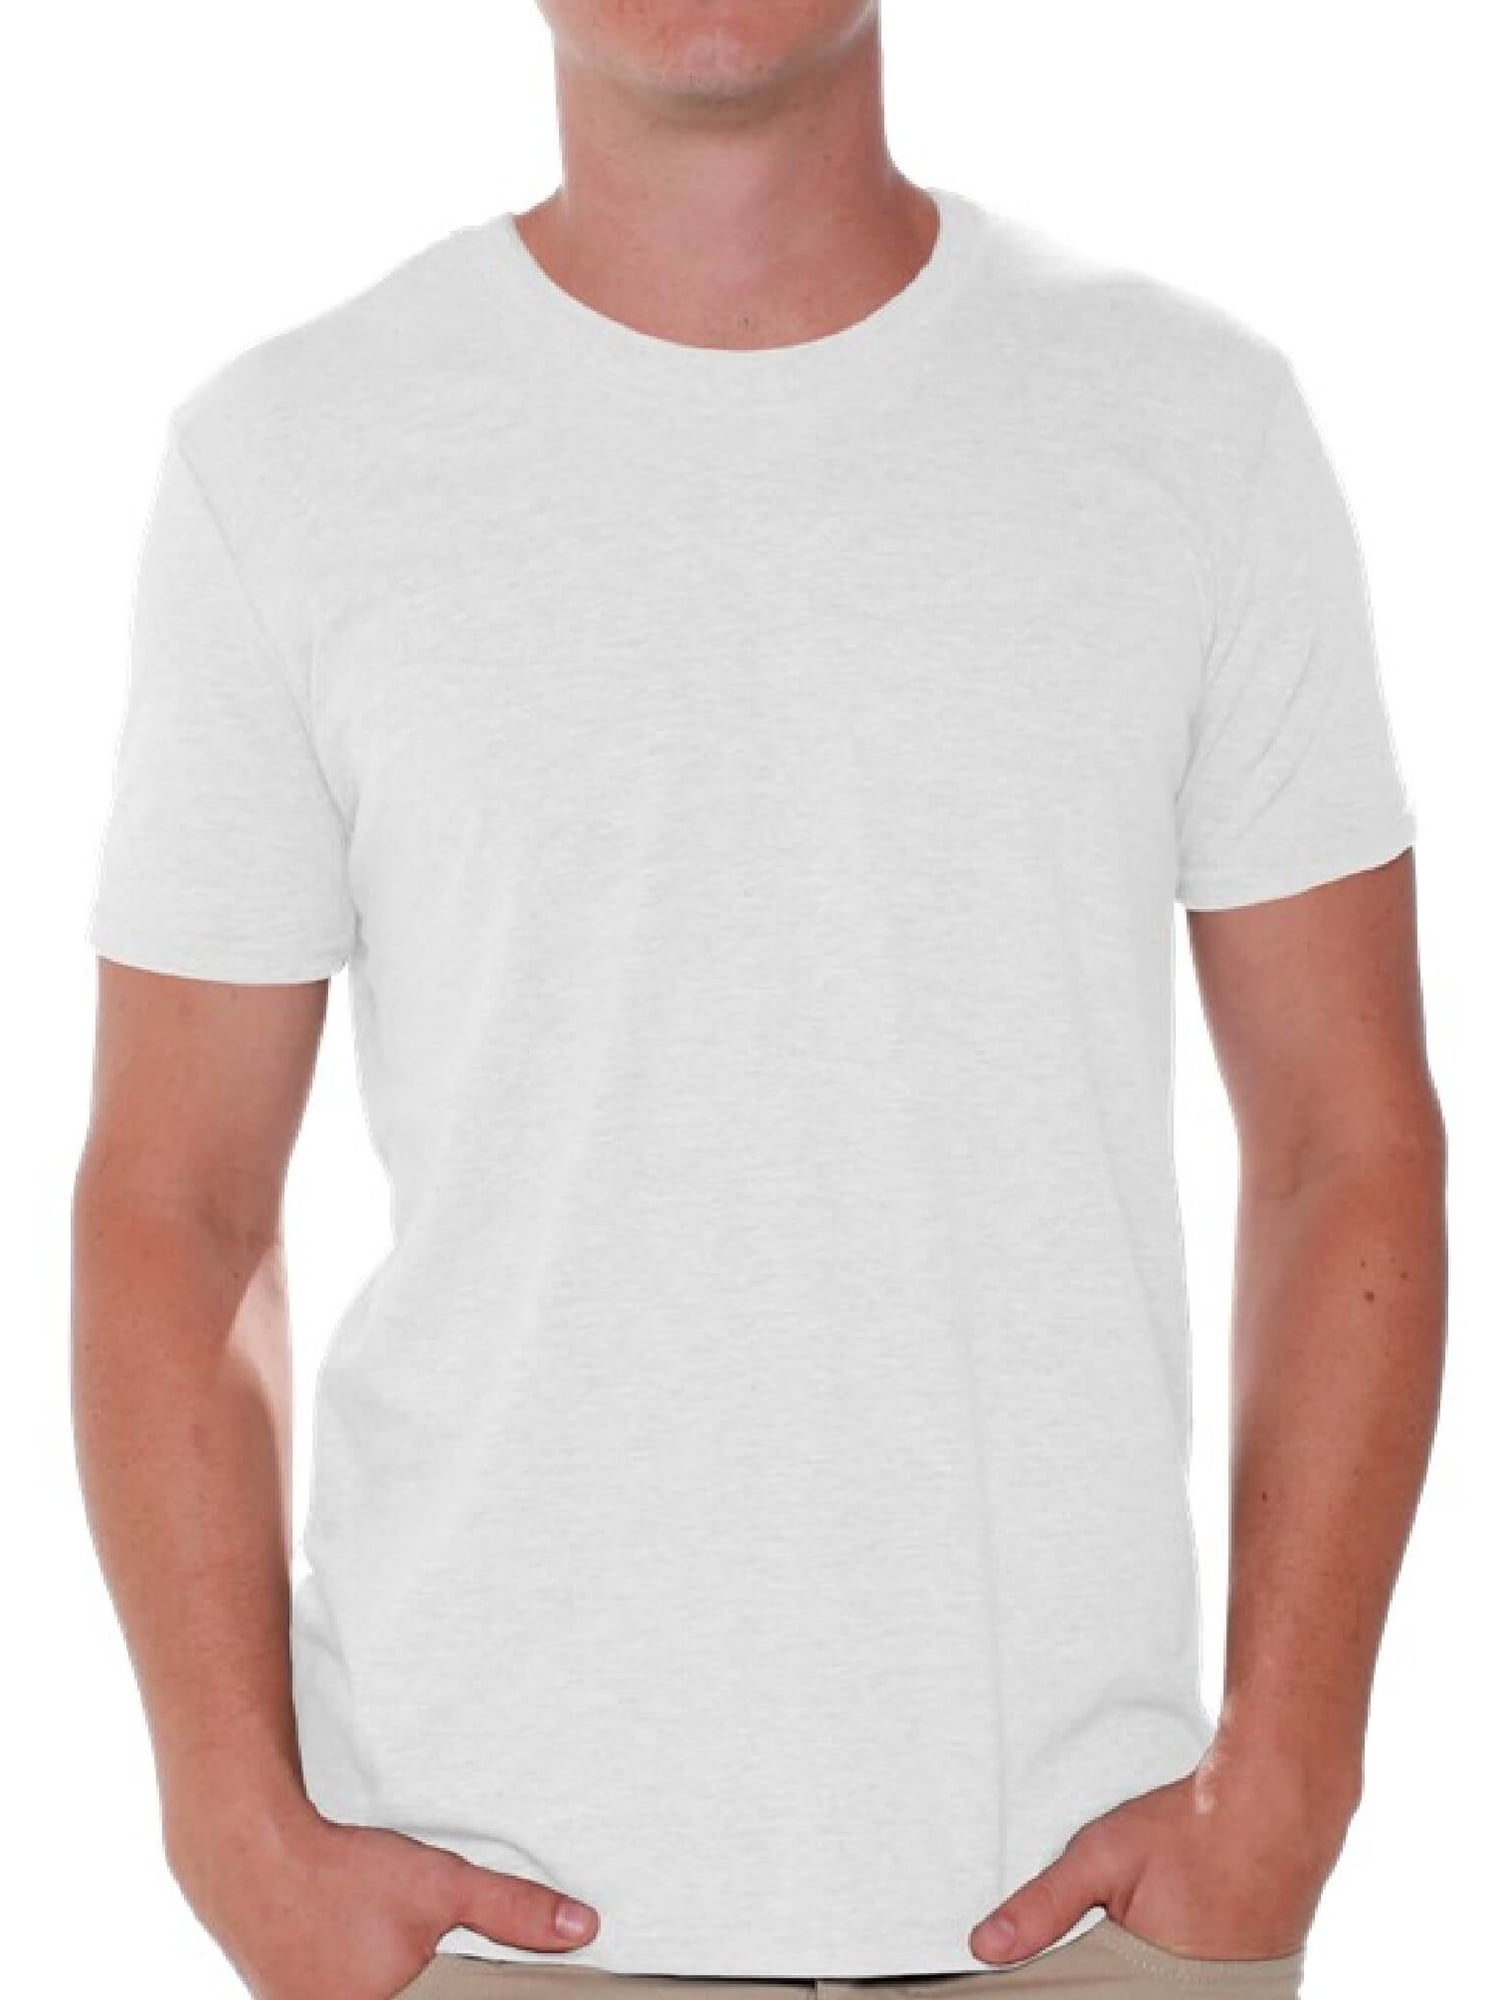 Louisville Cardinals Gildan Dry Blend Short Sleeve Shirt Men's Gray New XL